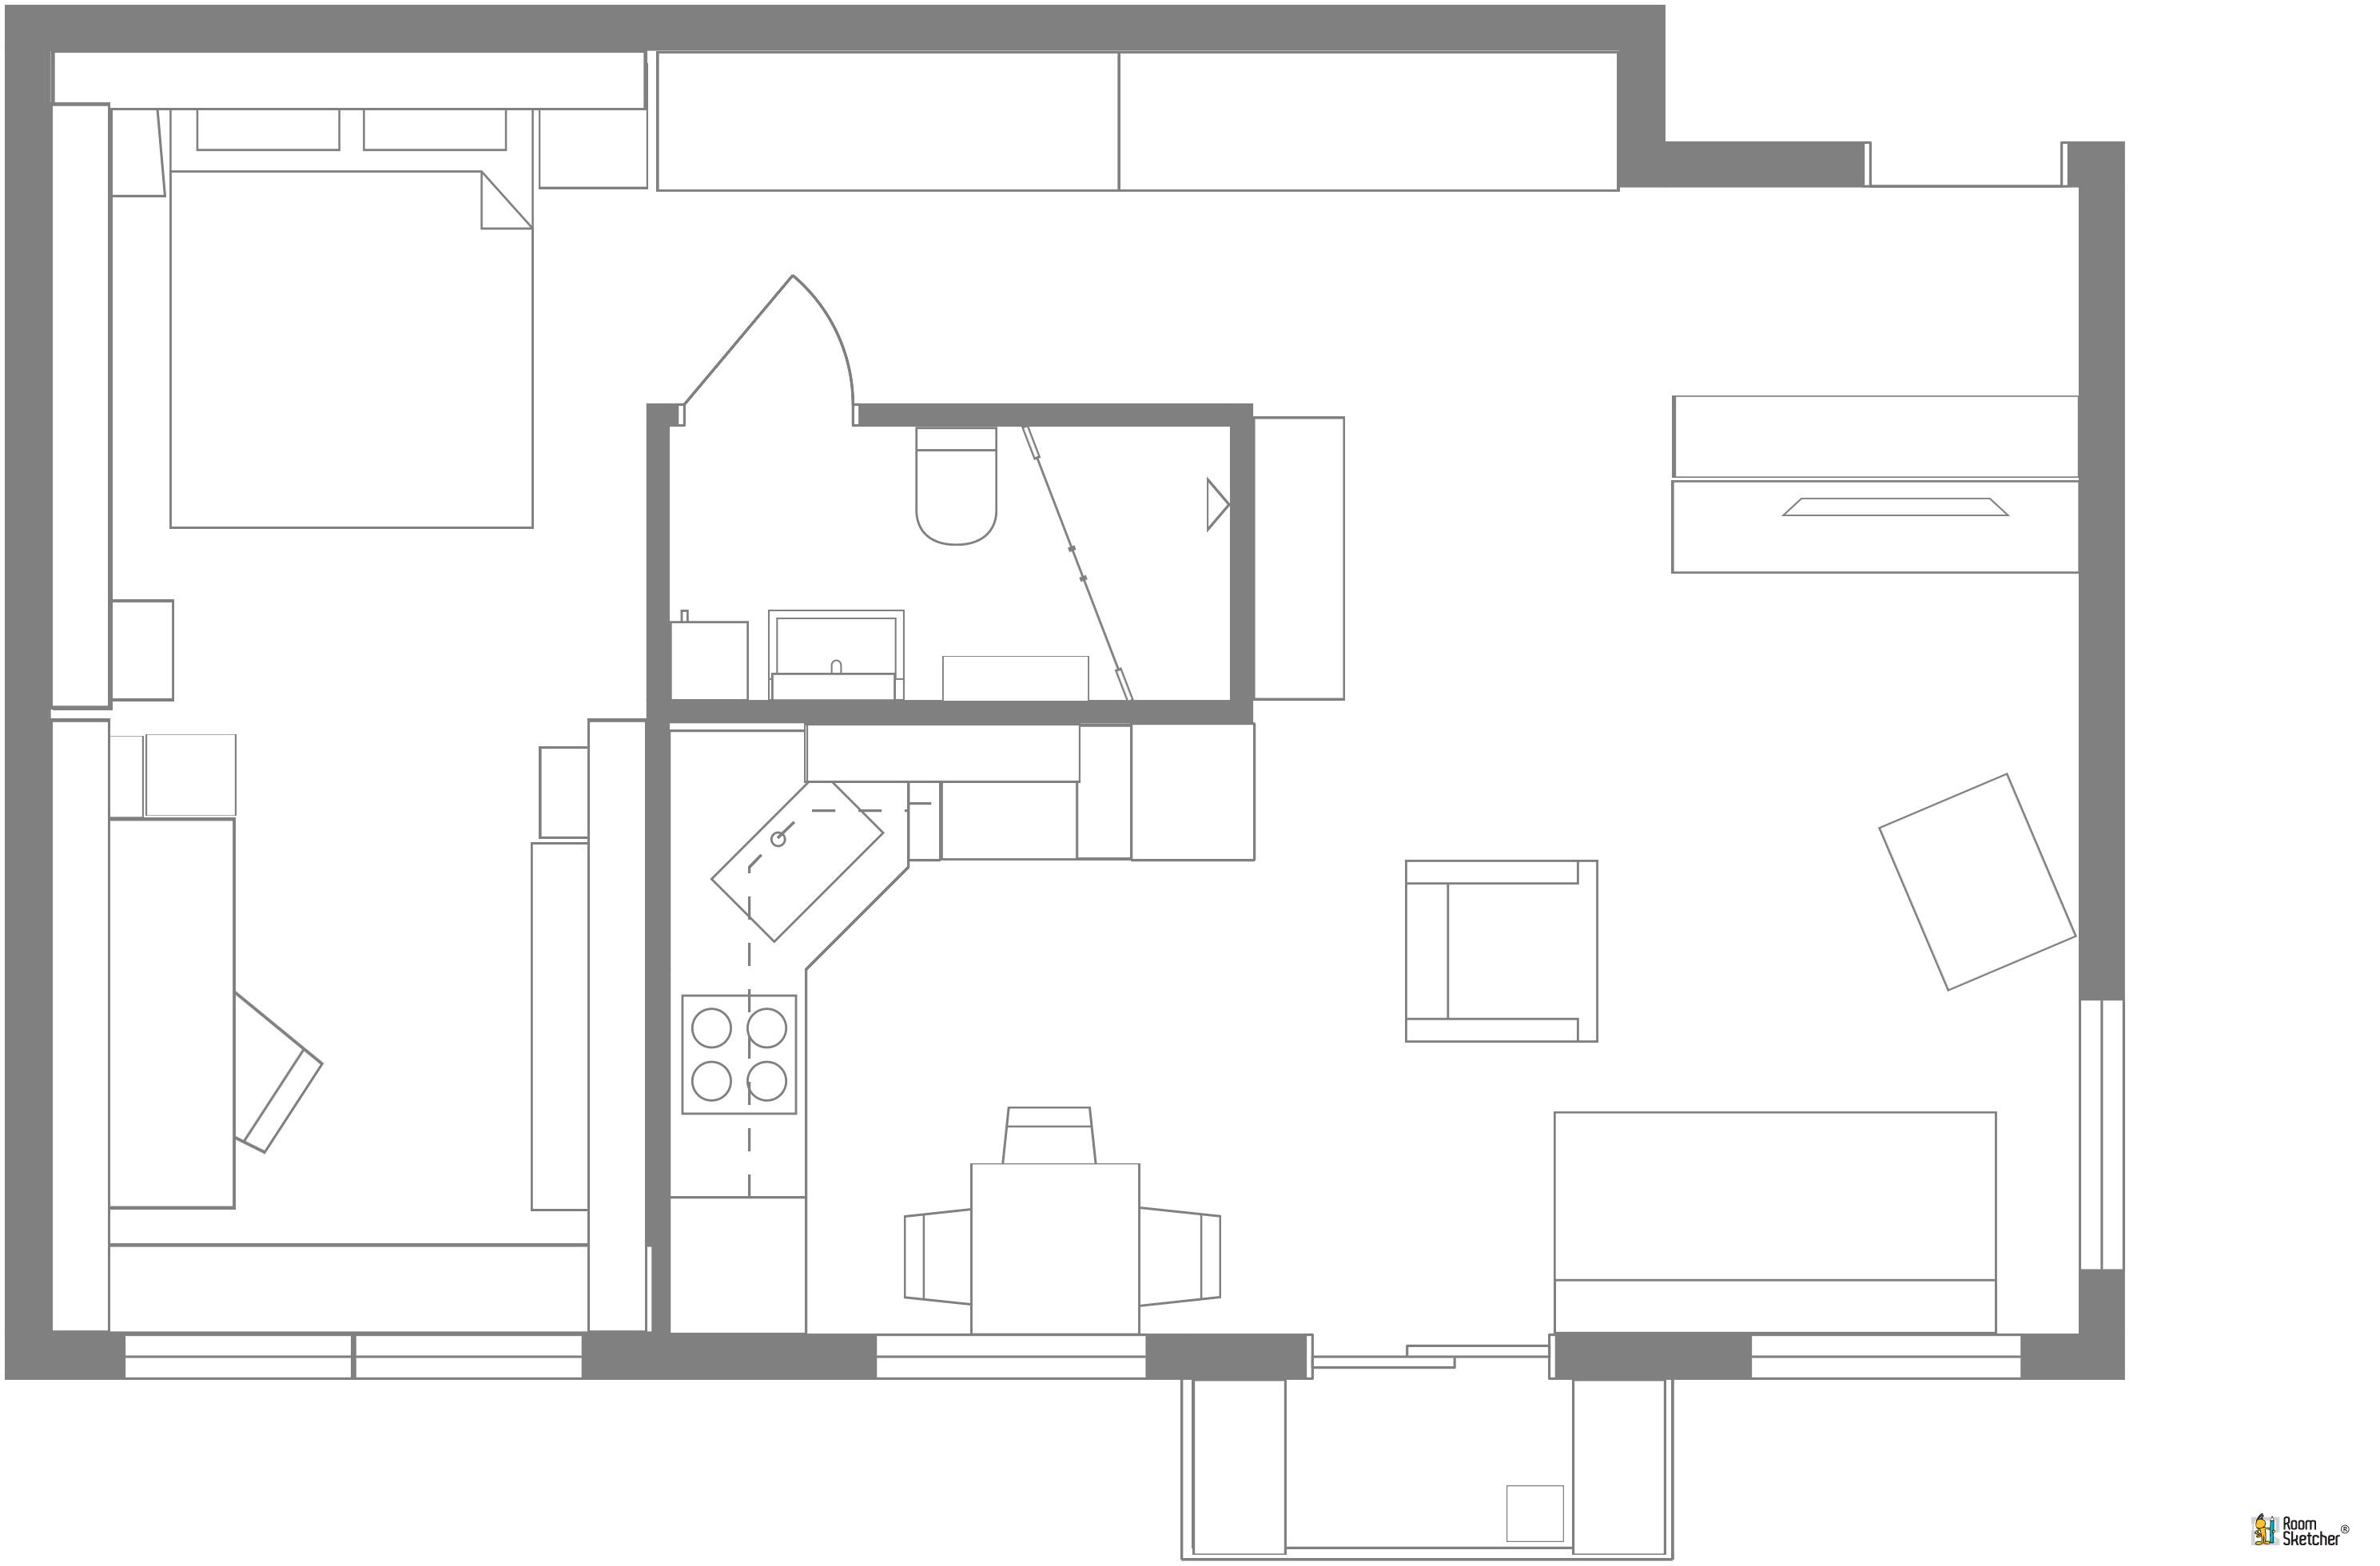 RoomSketcher Wohnidee: Kleine Wohnung mit Stauraum einrichten: 2D Grundriss #stauraum #grundriss #kleinewohnungeinrichten ©RoomSketcher